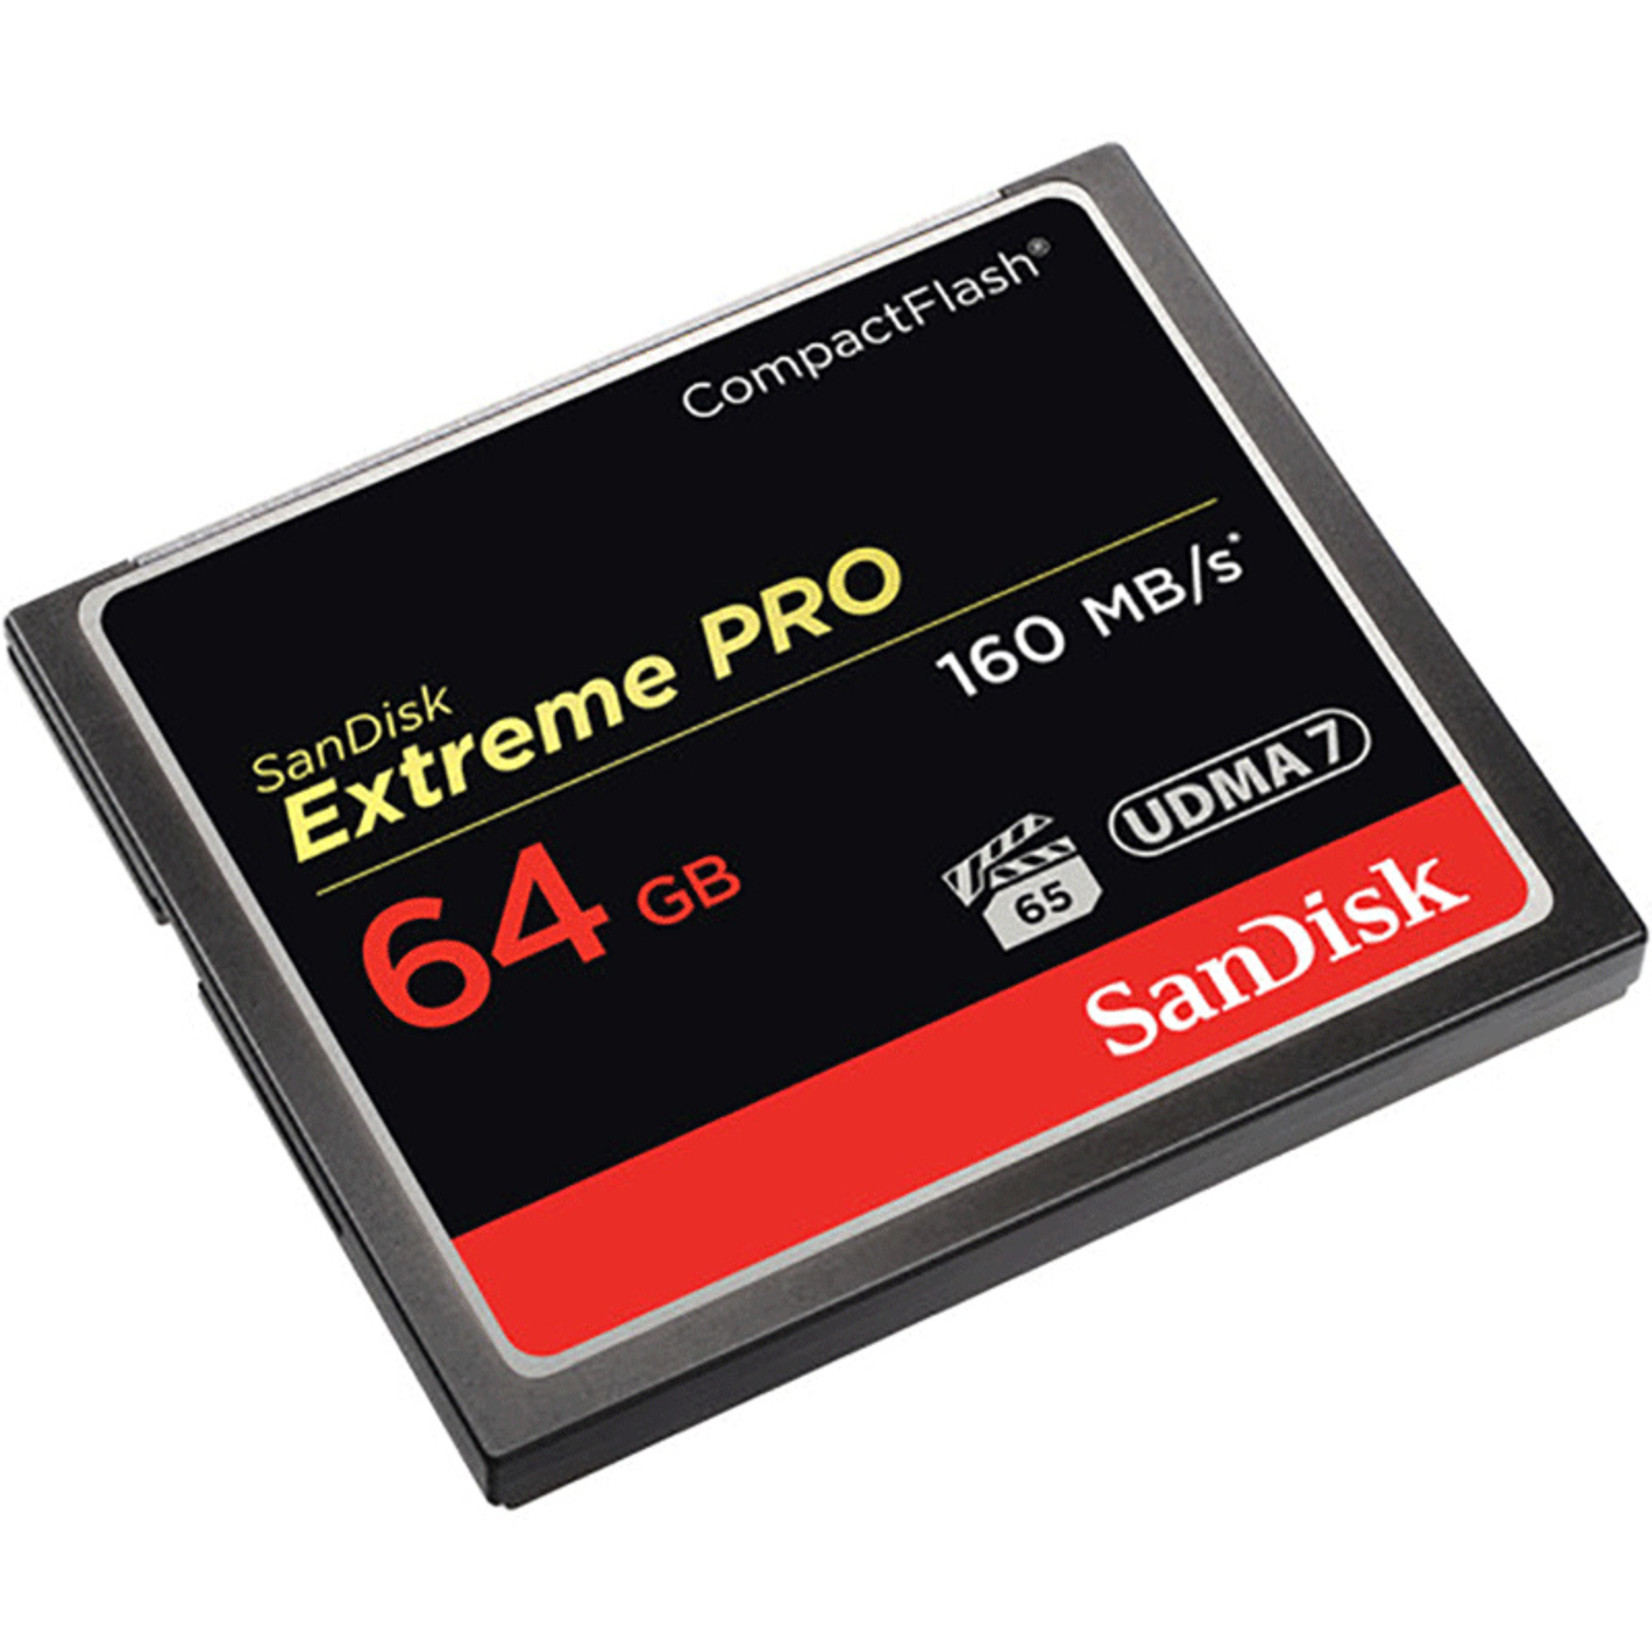 SanDisk SanDisk Extreme Pro CompactFlash Memory Card 160 Mbps